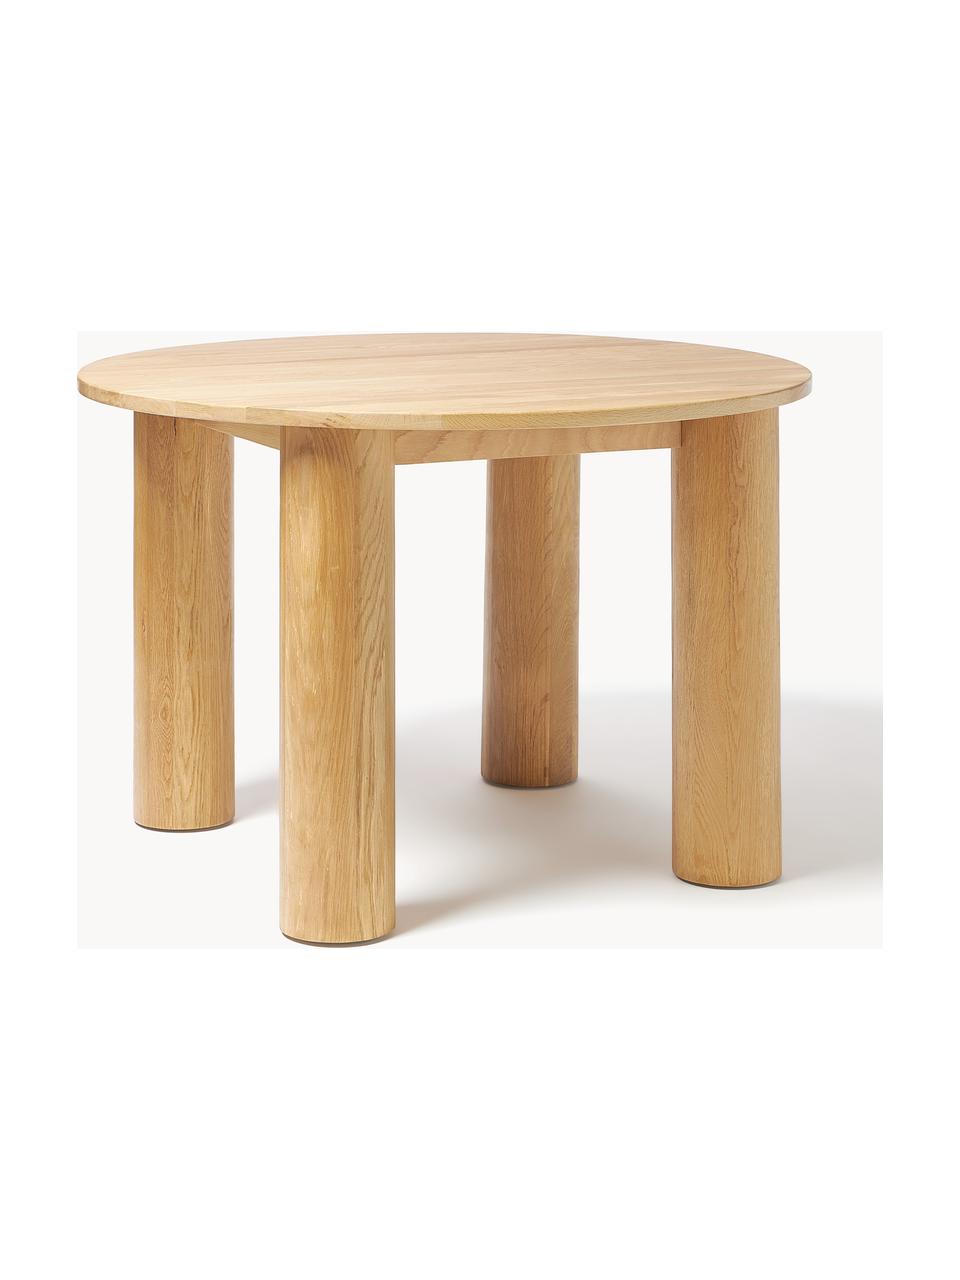 Okrúhly stôl z dubového dreva Ohana, Ø 120 cm, Masívne dubové drevo, ošetrené olejom
Tento produkt je vyrobený z trvalo udržateľného dreva s certifikátom FSC®., Dubové drevo, ošetrené svetlým olejom, Ø 120 cm